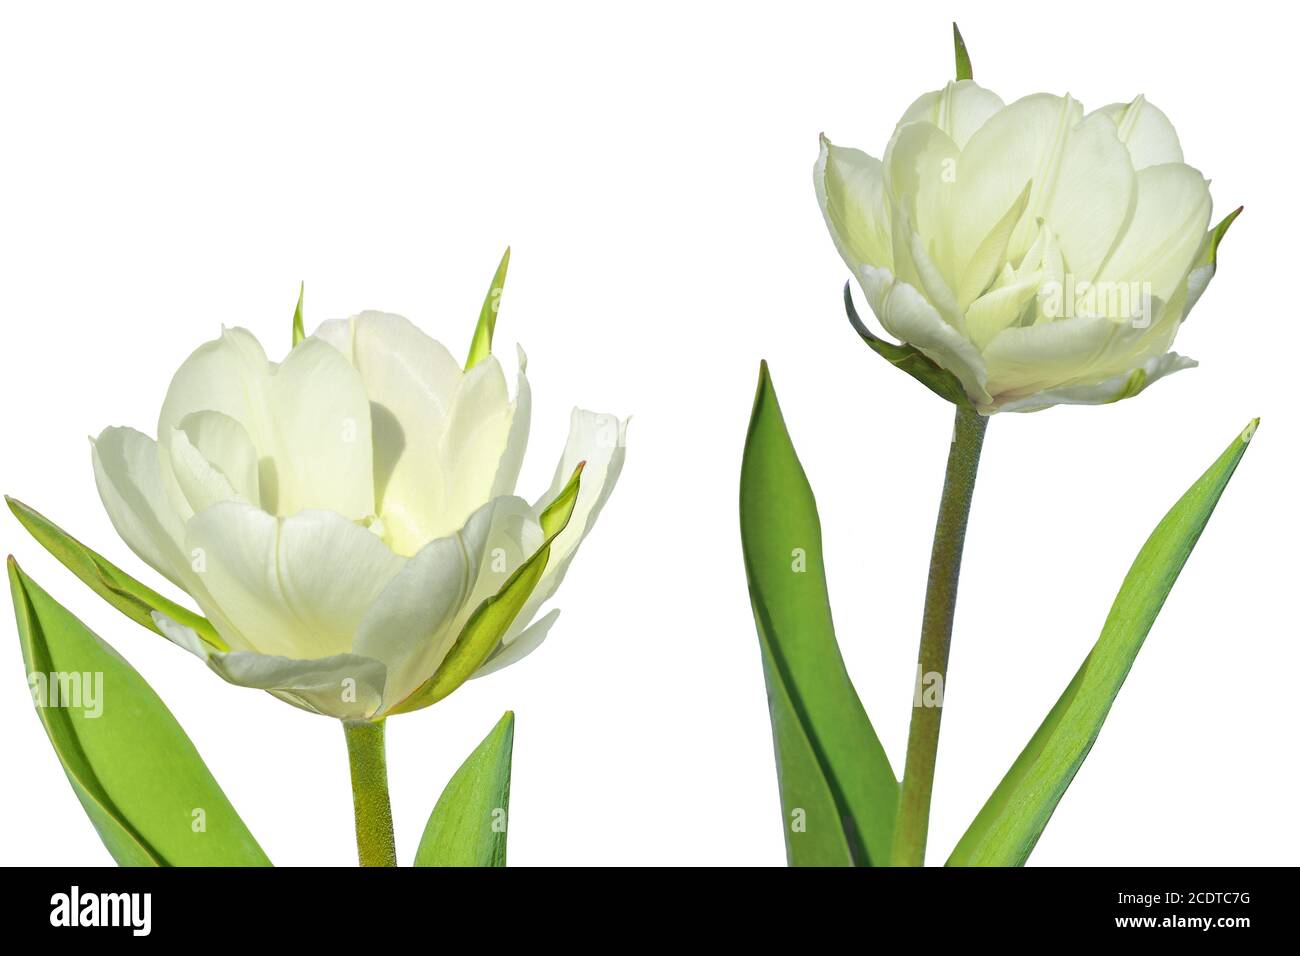 Due tulipani bianchi terrosi si avvicinano isolati su sfondo bianco Foto Stock